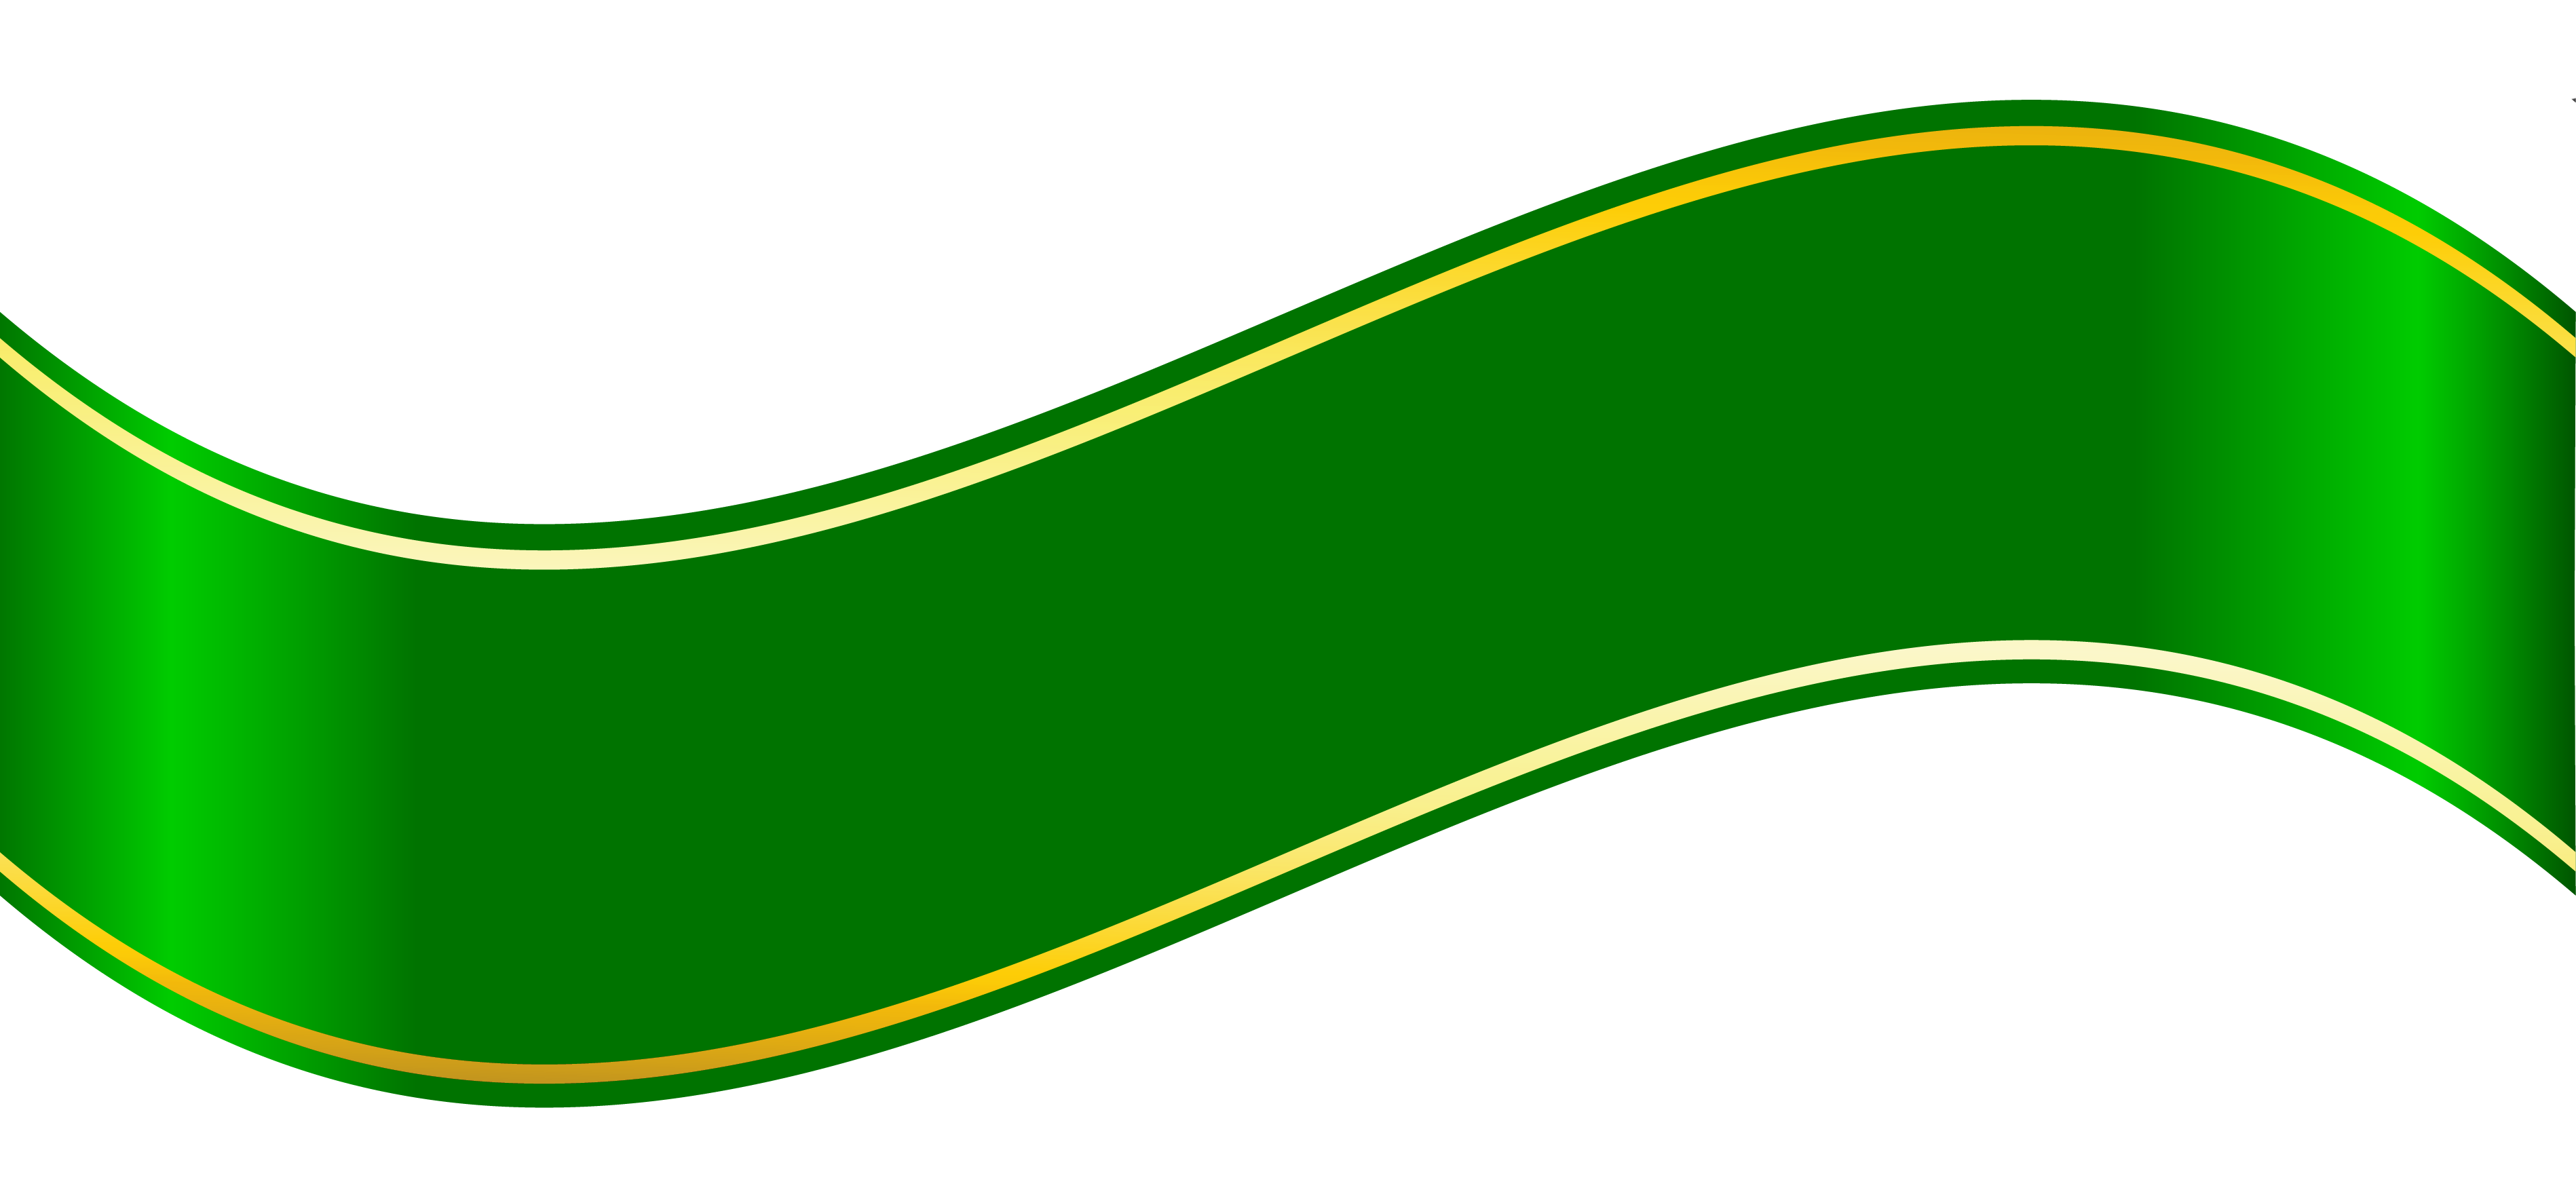 Green Ribbon PNG HD Quality